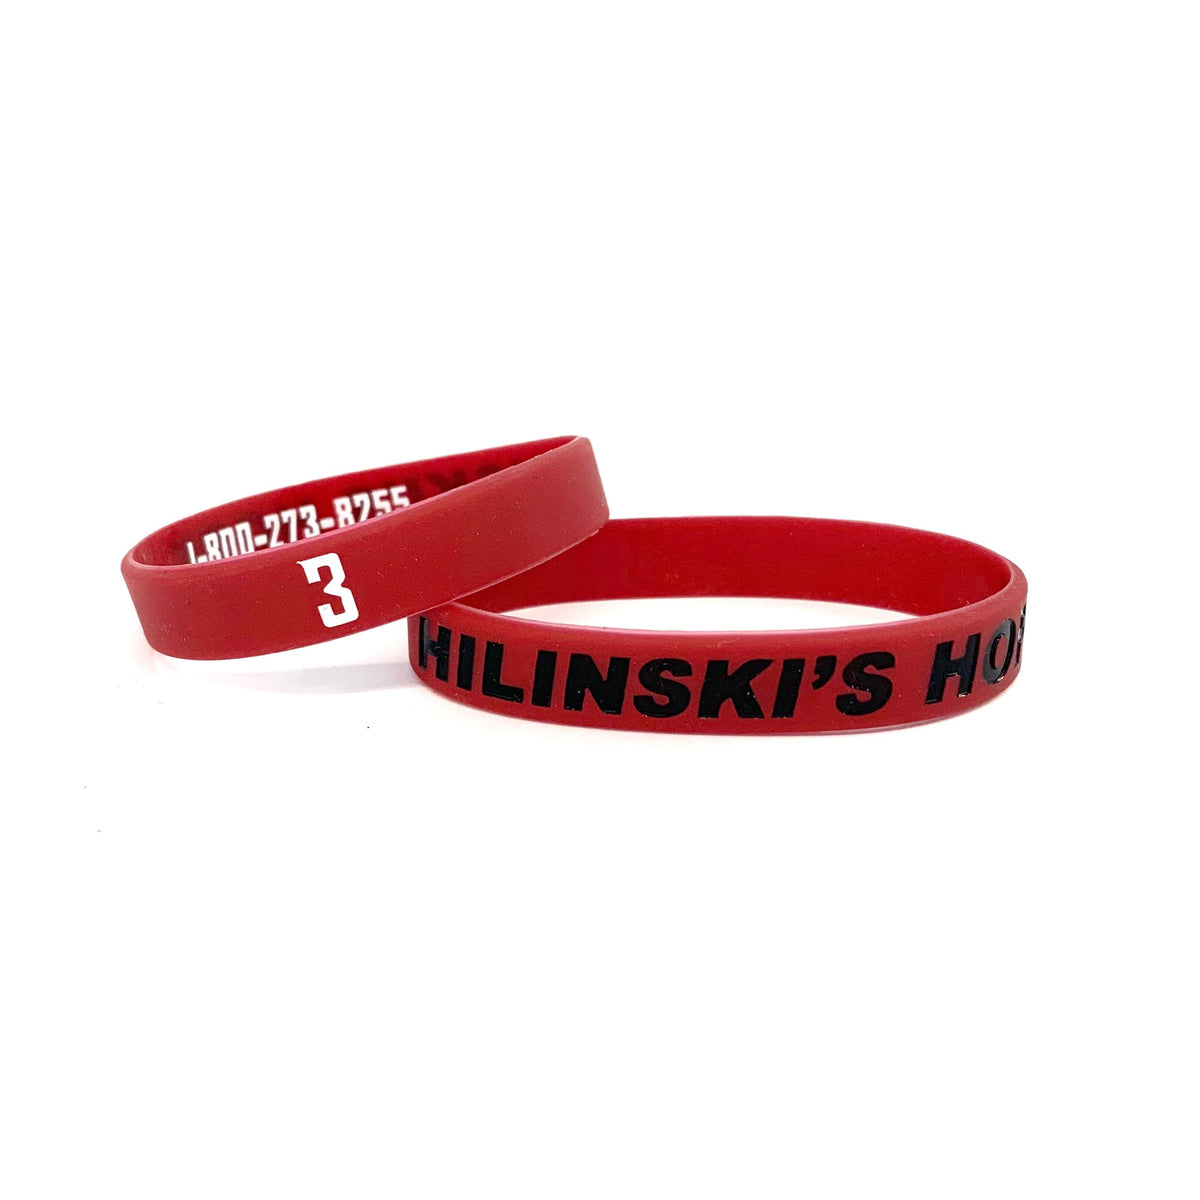 Hilinskis Hope Bracelet